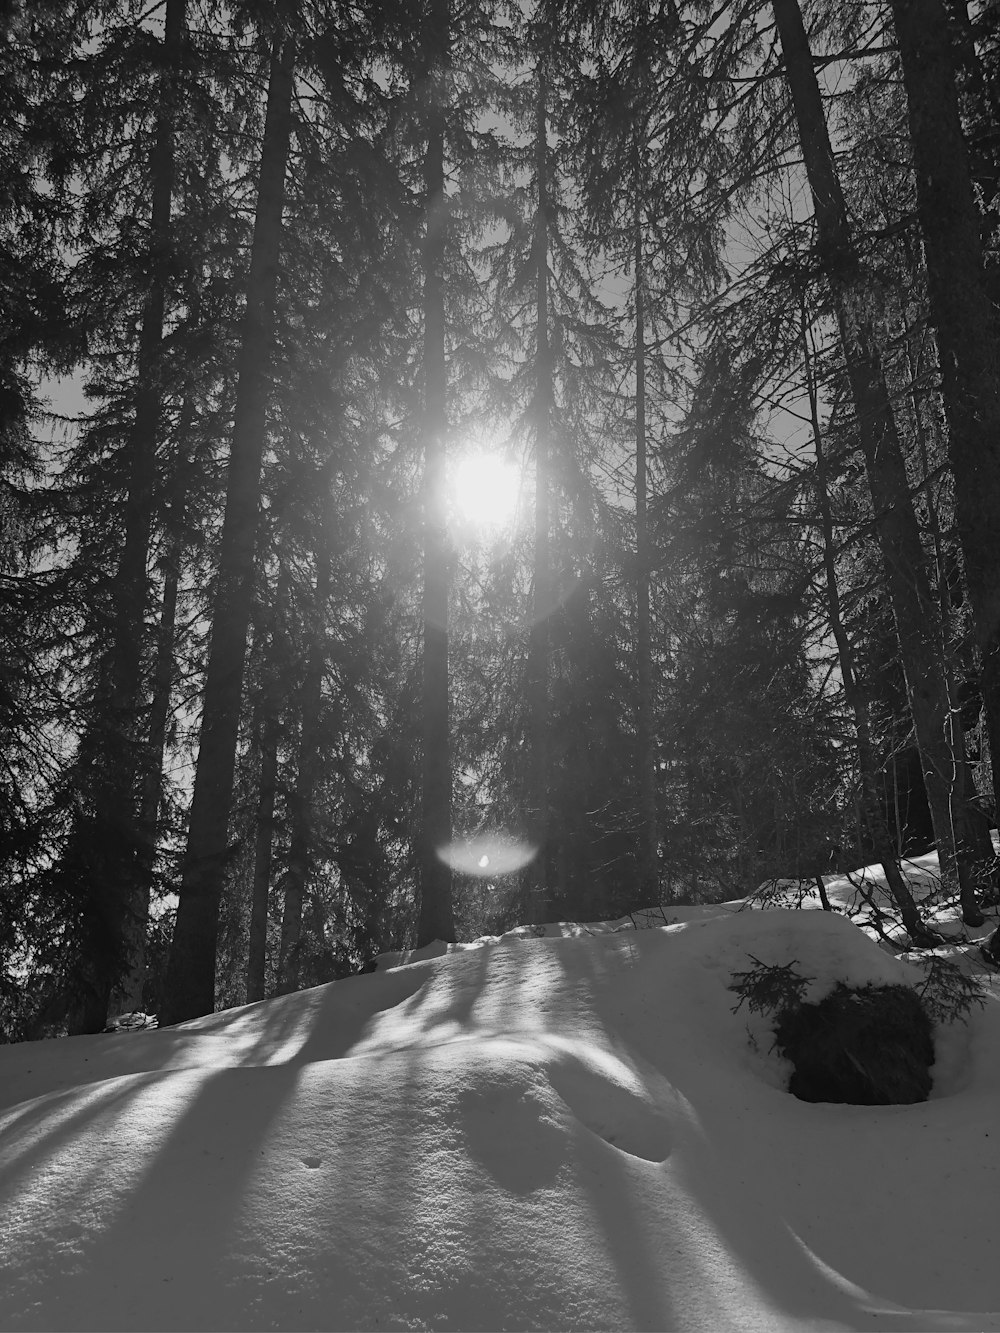 Le soleil brille à travers les arbres dans la neige